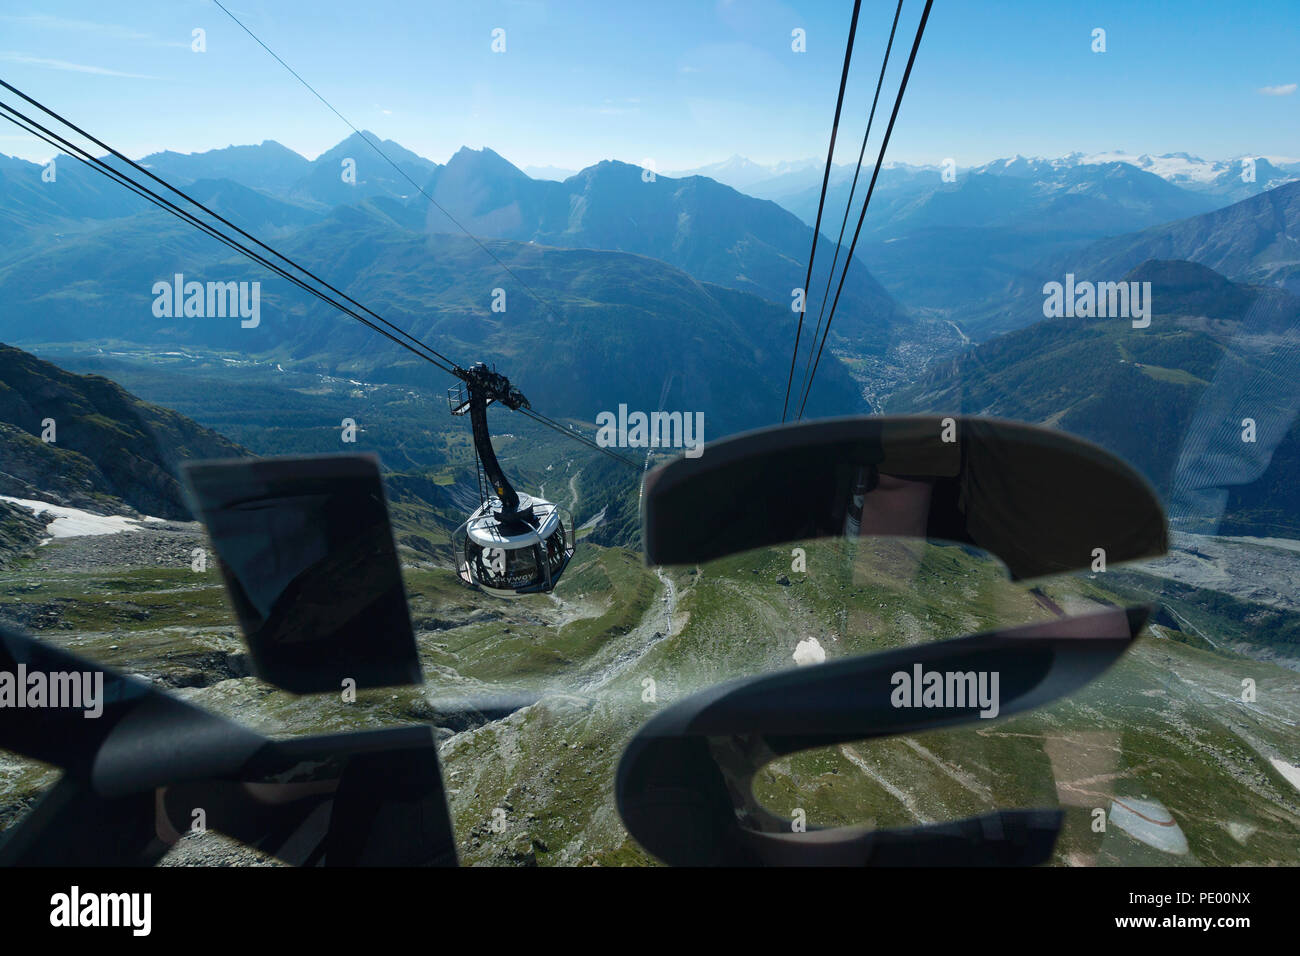 COURMAYEUR, ITALIEN, 2. AUGUST: Blick von einer Kabine aus der Skyway während der Klettern auf der Panoramaterrasse Punta Helbronner in der Nähe von Monte Bianco (Mont Blanc) Stockfoto